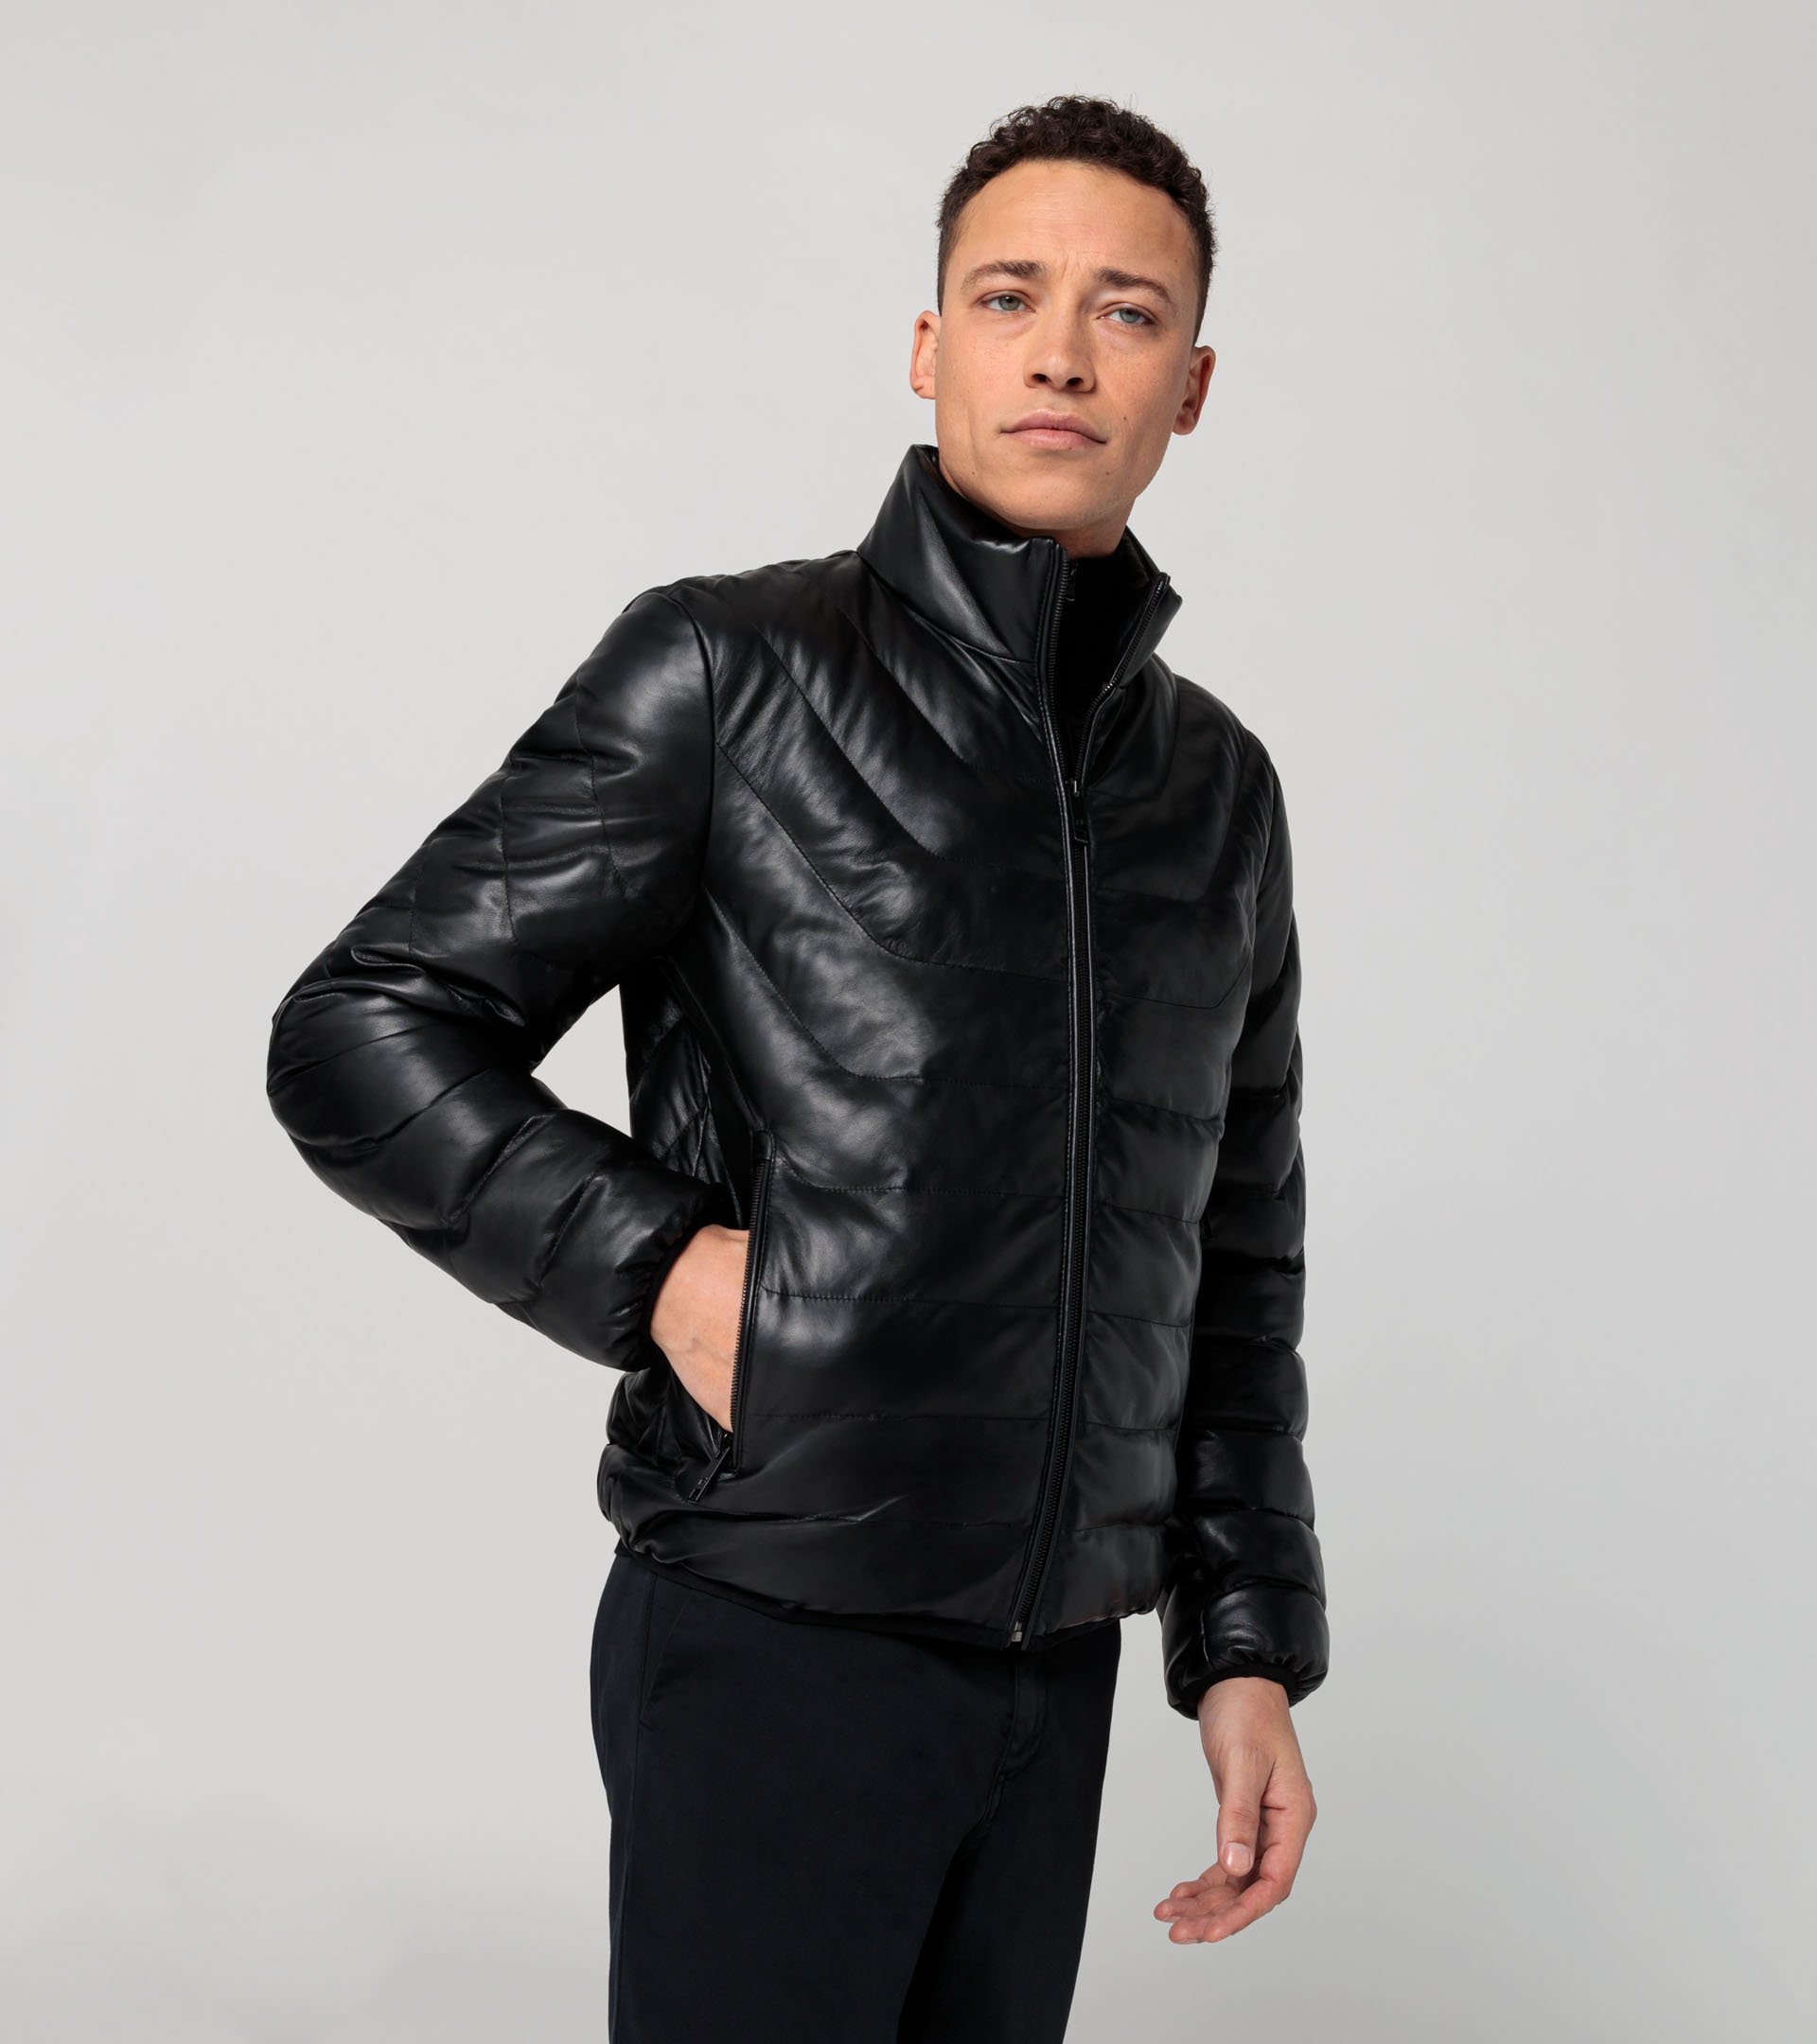 Athleisure padded leather jacket - Designer Men's Jackets & Coats ...